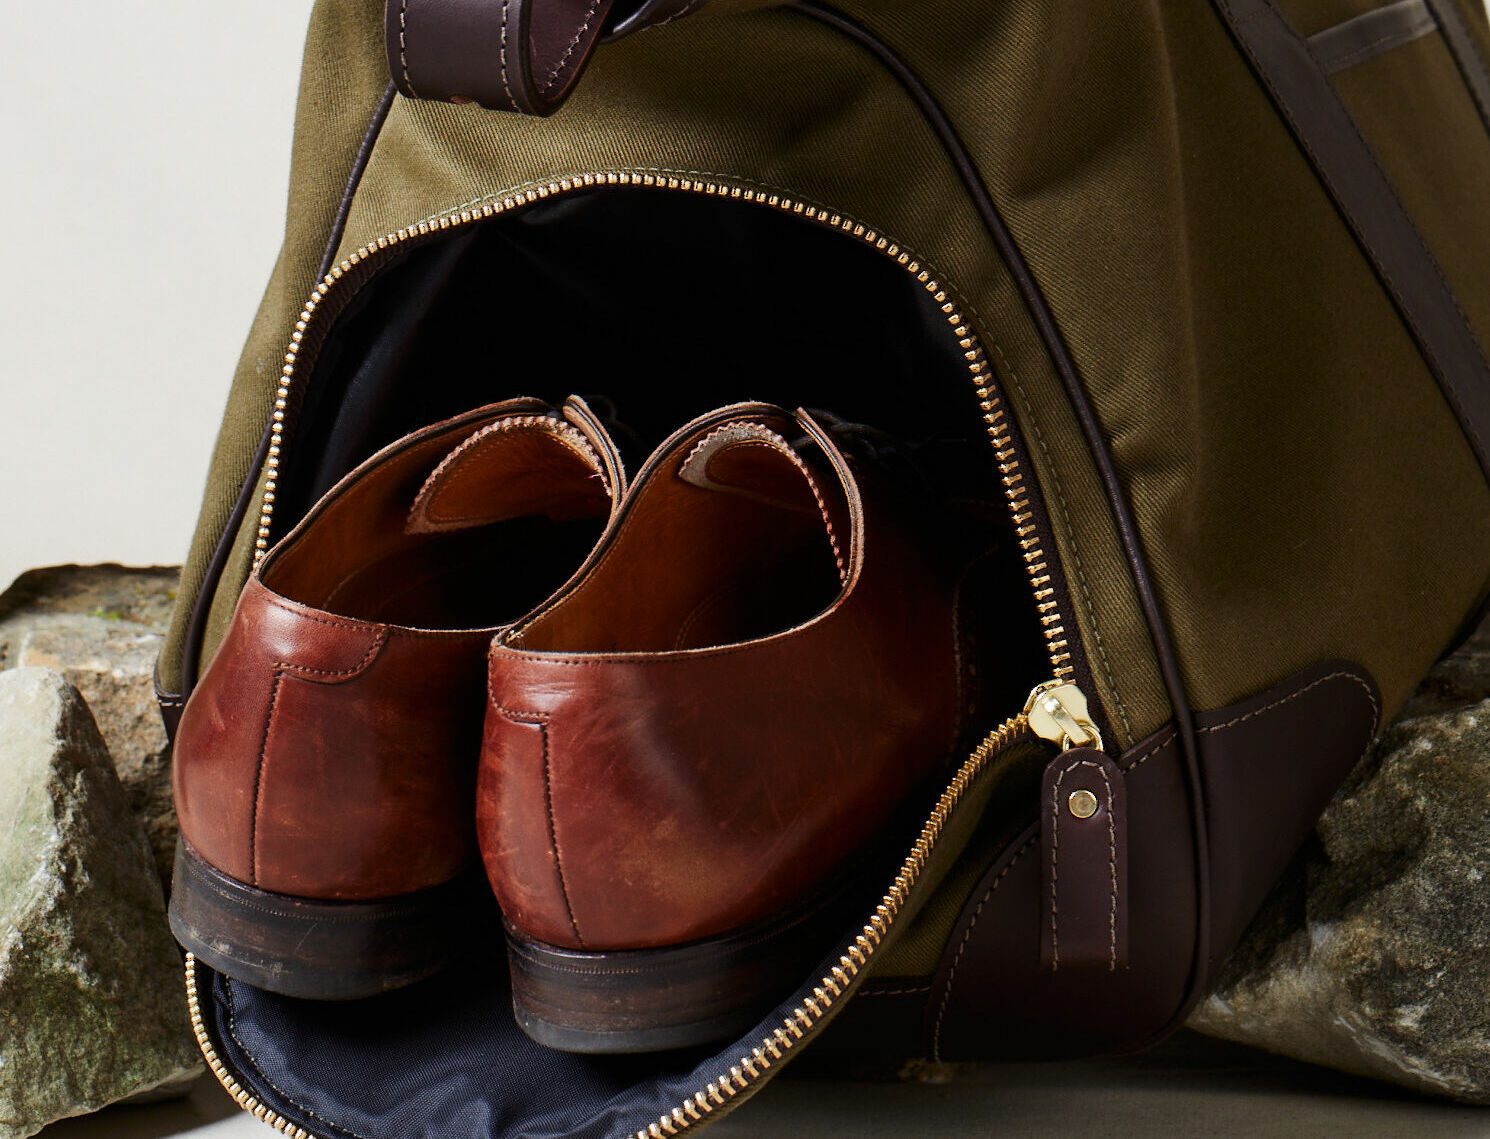 Chapman Bags. 2014. Dunmail collection bag & hardware design. by Adam  Atkinson at Coroflot.com